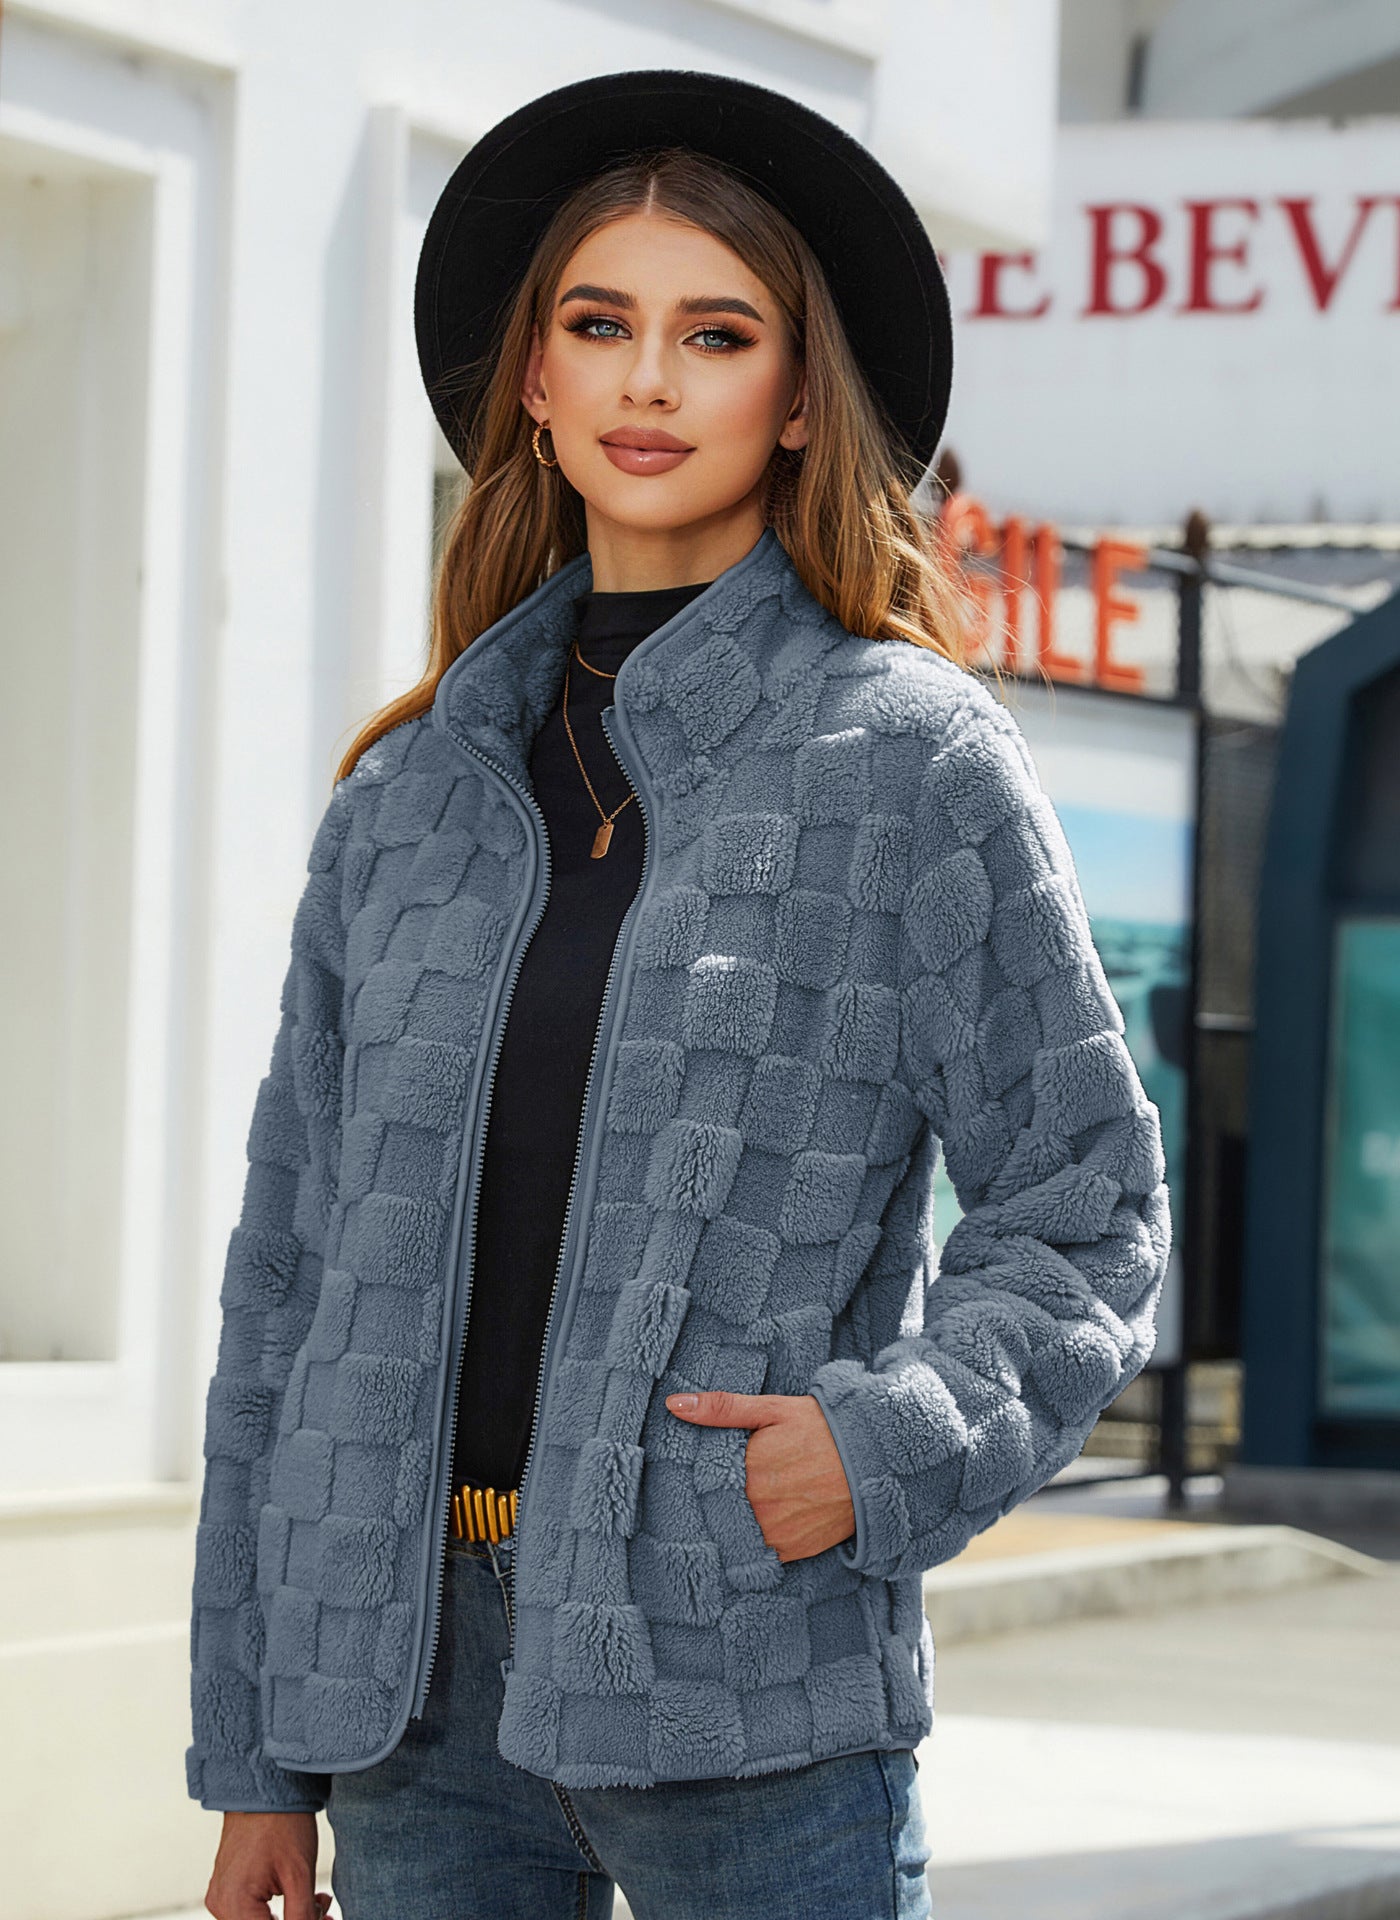 立領毛絨外套冬季長袖寬鬆拉鍊開襟衫時尚純色棋盤格設計外套女外套